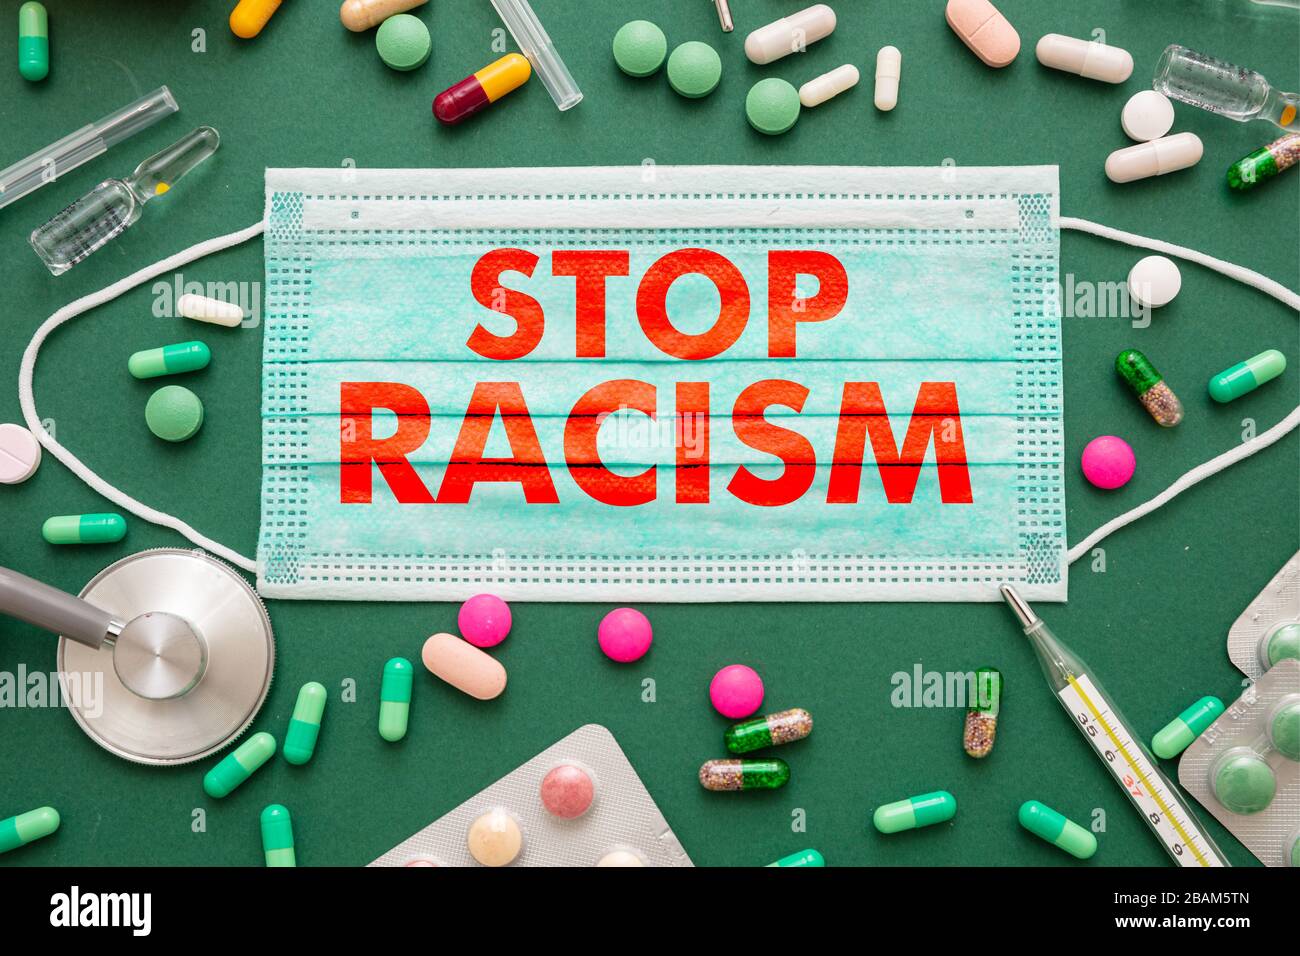 Fermare il razzismo, il concetto di infezione da malattie. Stop razzismo testo su una maschera medica, salute medicina sfondo verde. No al razzismo, messaggio di esclusione sociale f Foto Stock